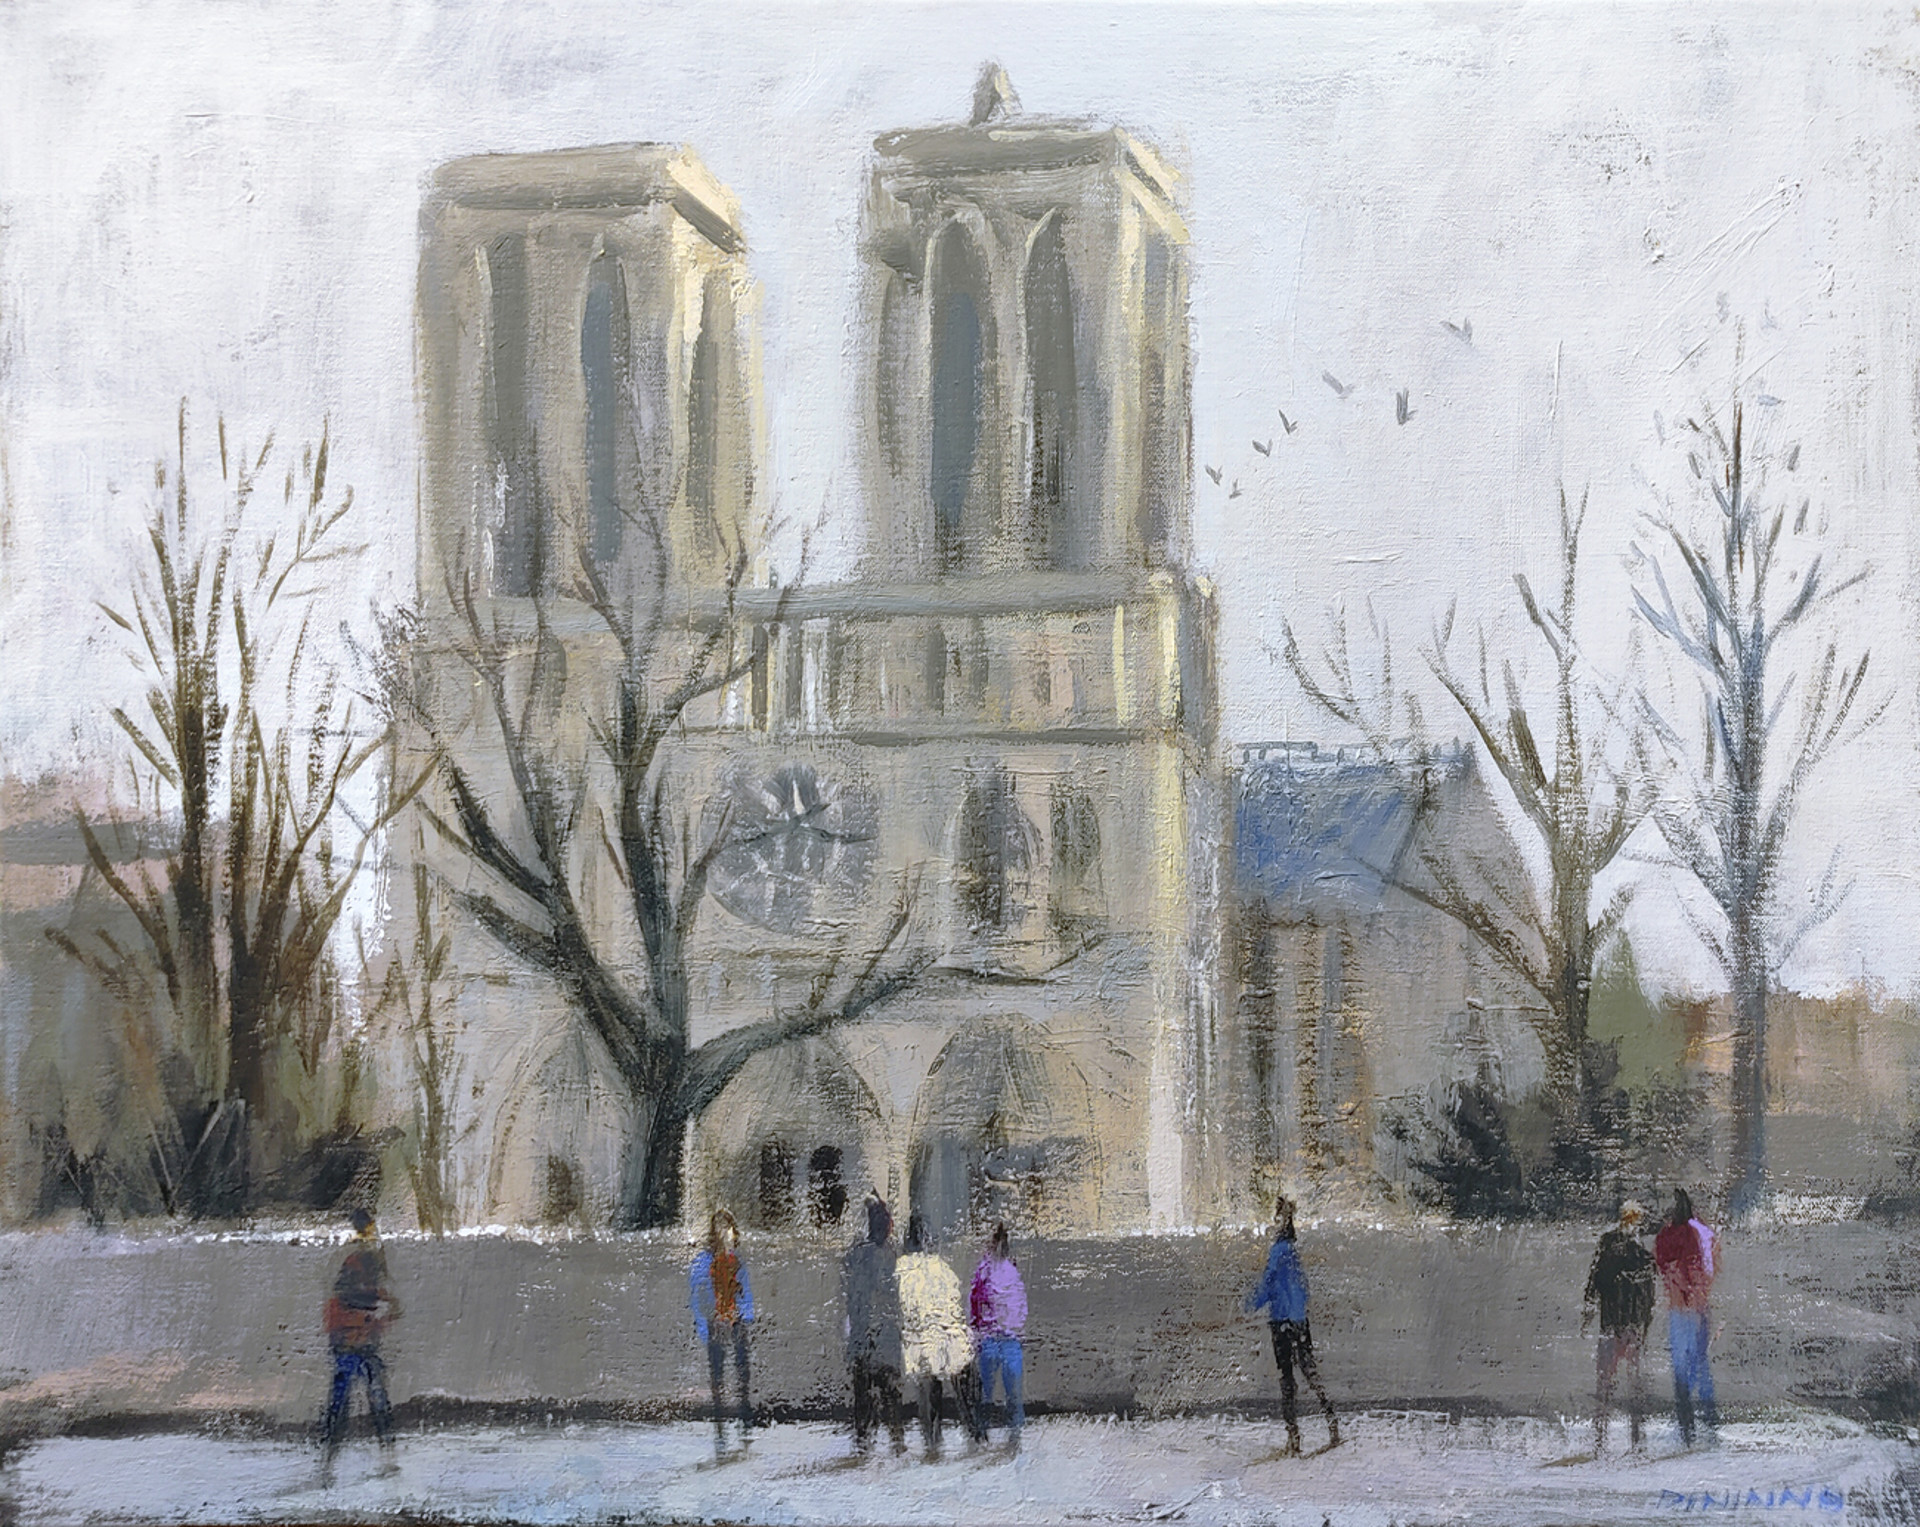 Notre Dame de Paris by Steve Dininno